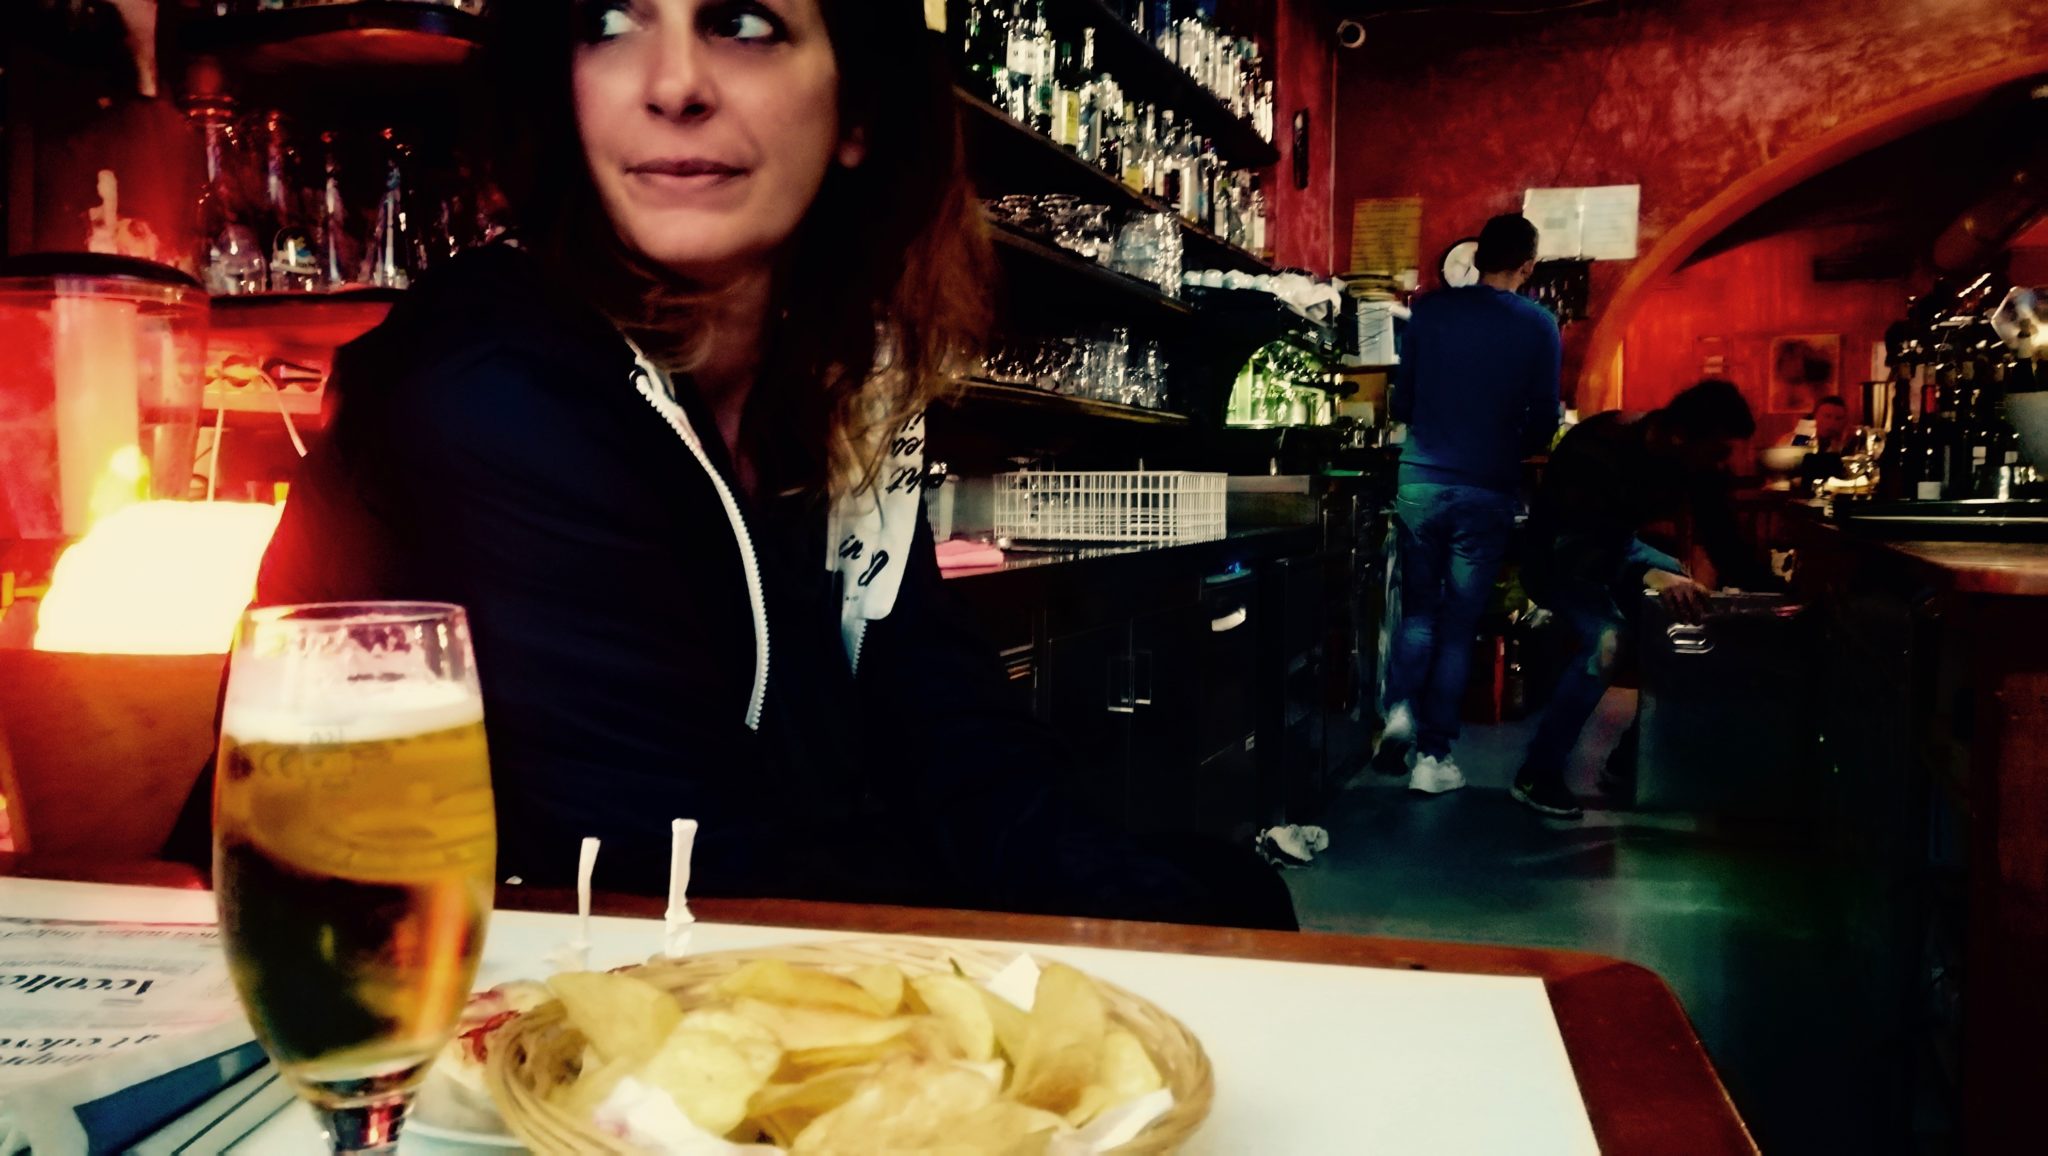 Verena e Marco sognavano di aprire un bar in Grecia. Hanno aperto a Bolzano il Nadamas: cucina etnica, musica da ovunque, luogo cult